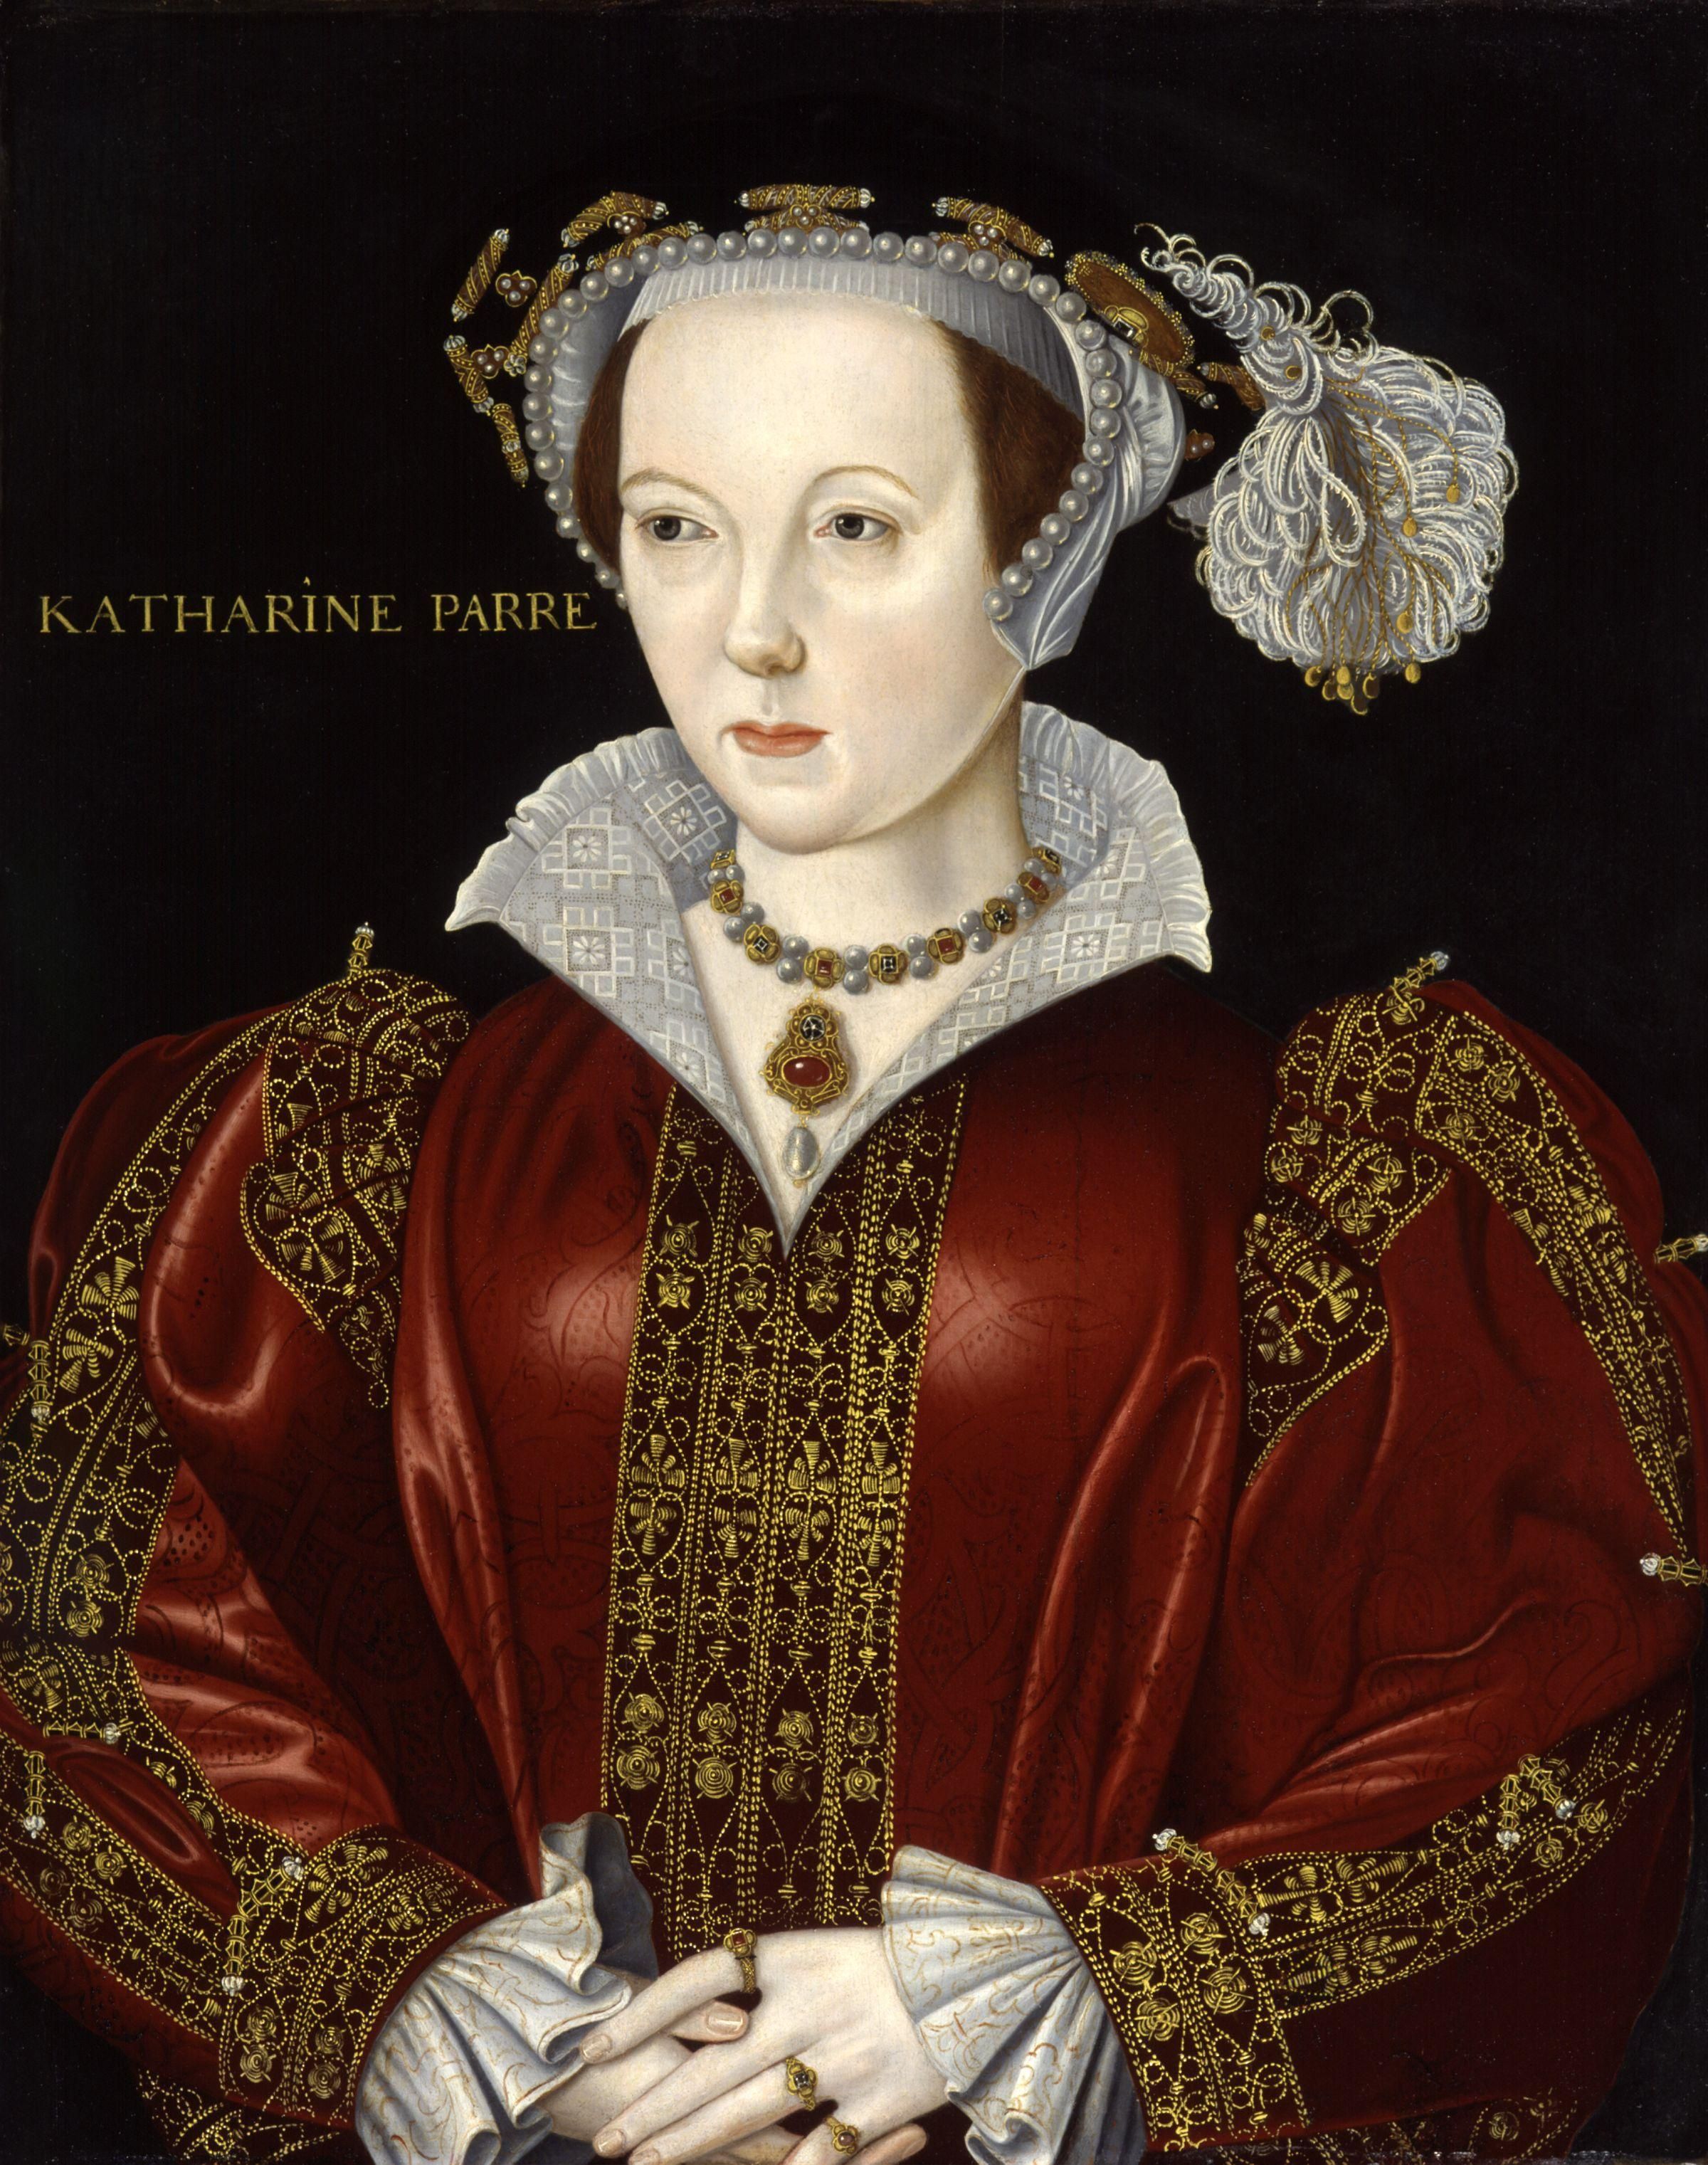 Annie nie udało się zostać ponownie żoną Henryka VIII. Jego szóstą małżonką została Katarzyna Parr, co bolało tym bardziej, że nie była ani młodsza, ani piękniejsza od Anny (źródło: domena publiczna).